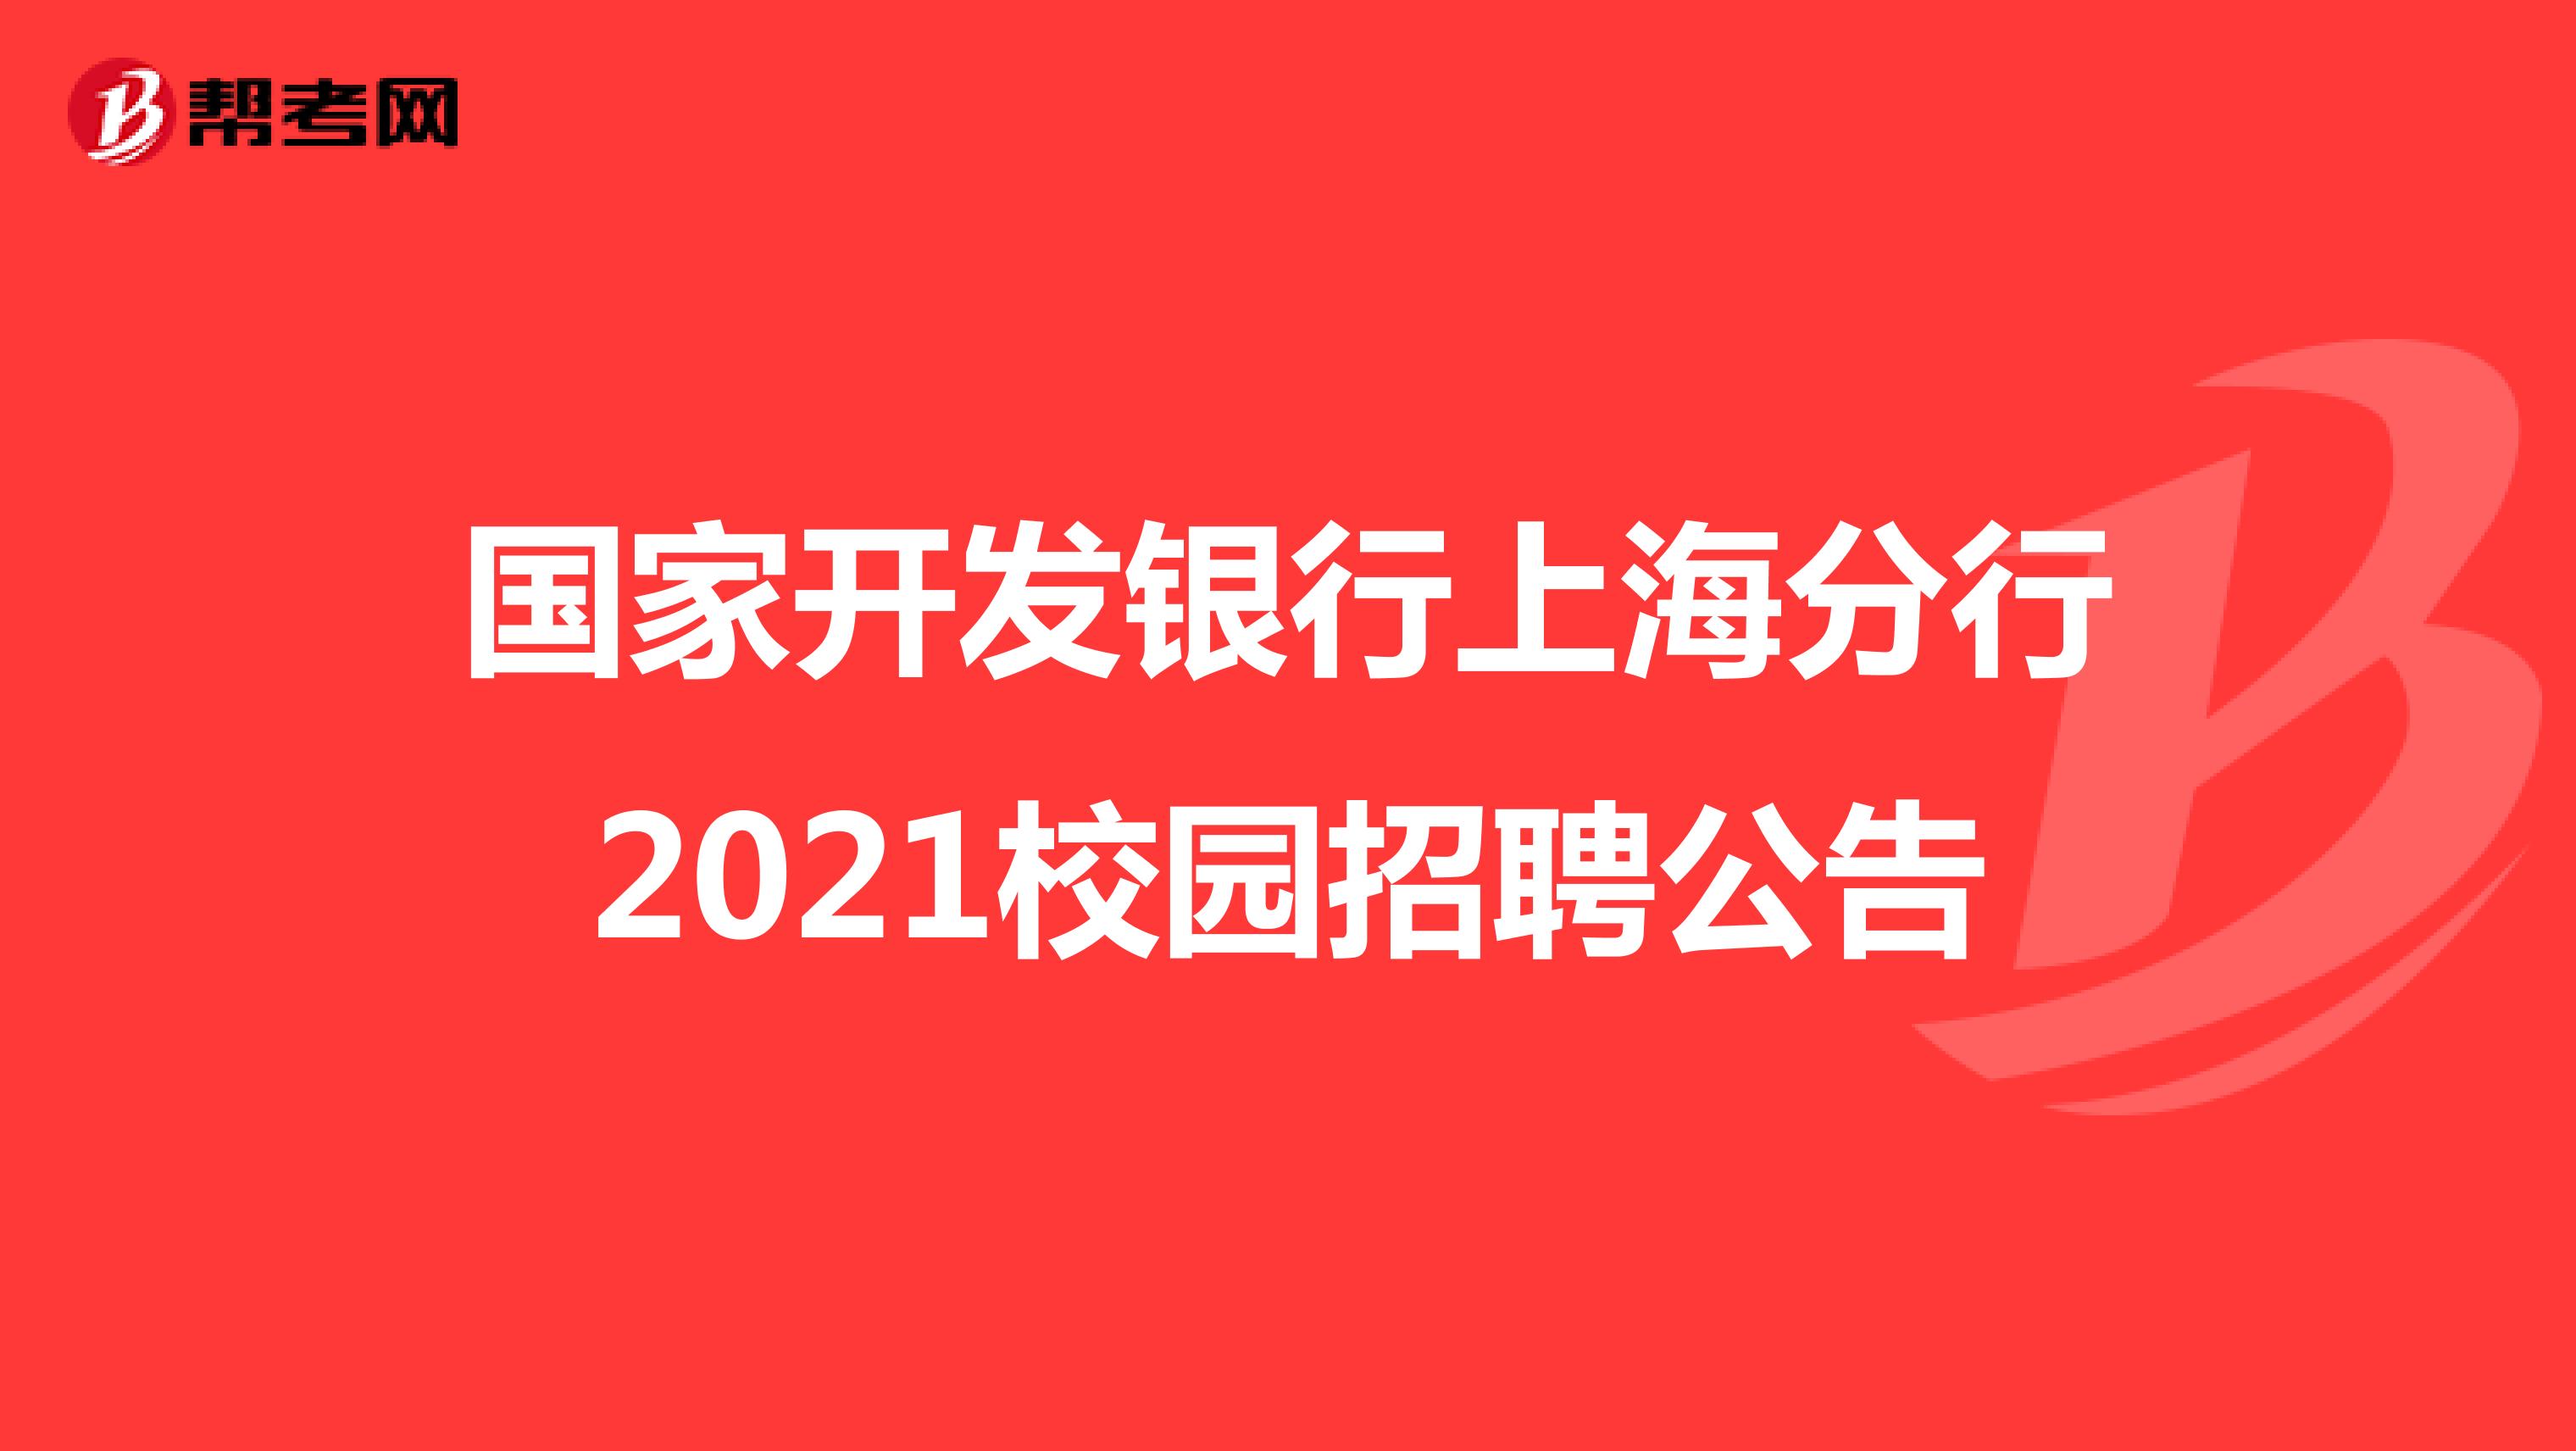 国家开发银行上海分行2021校园招聘公告